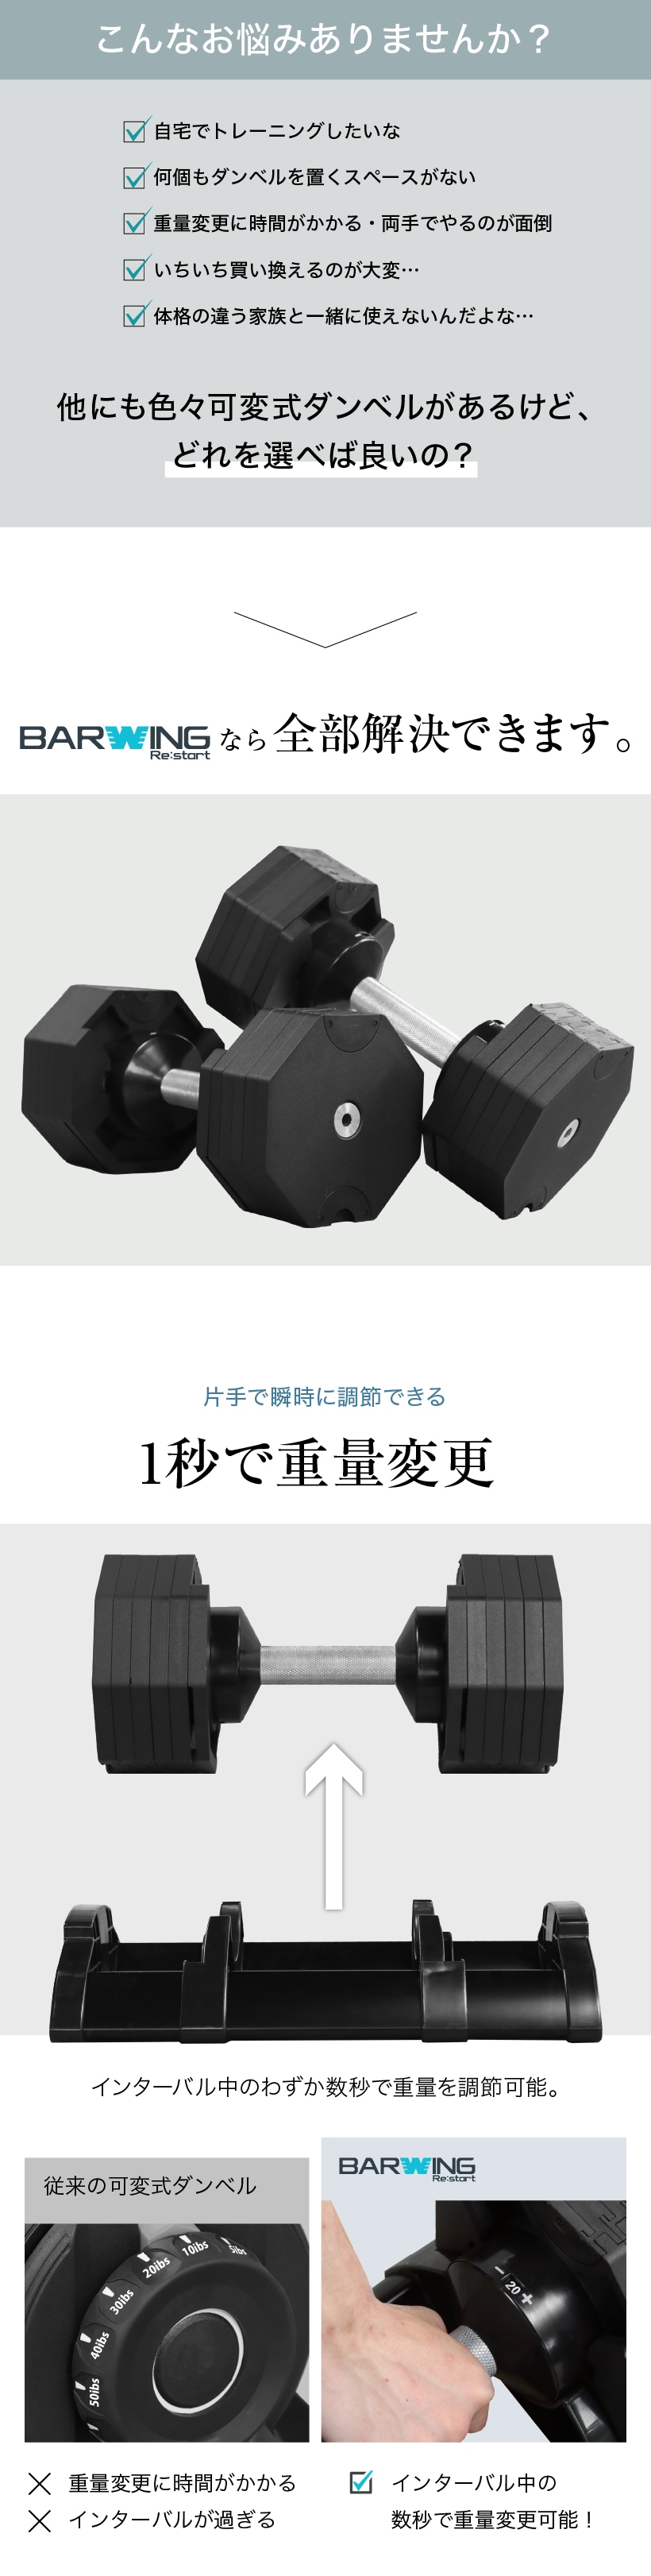 NEW 年モデル 可変式ダンベル kg 2個セット 段階調節 重量調節